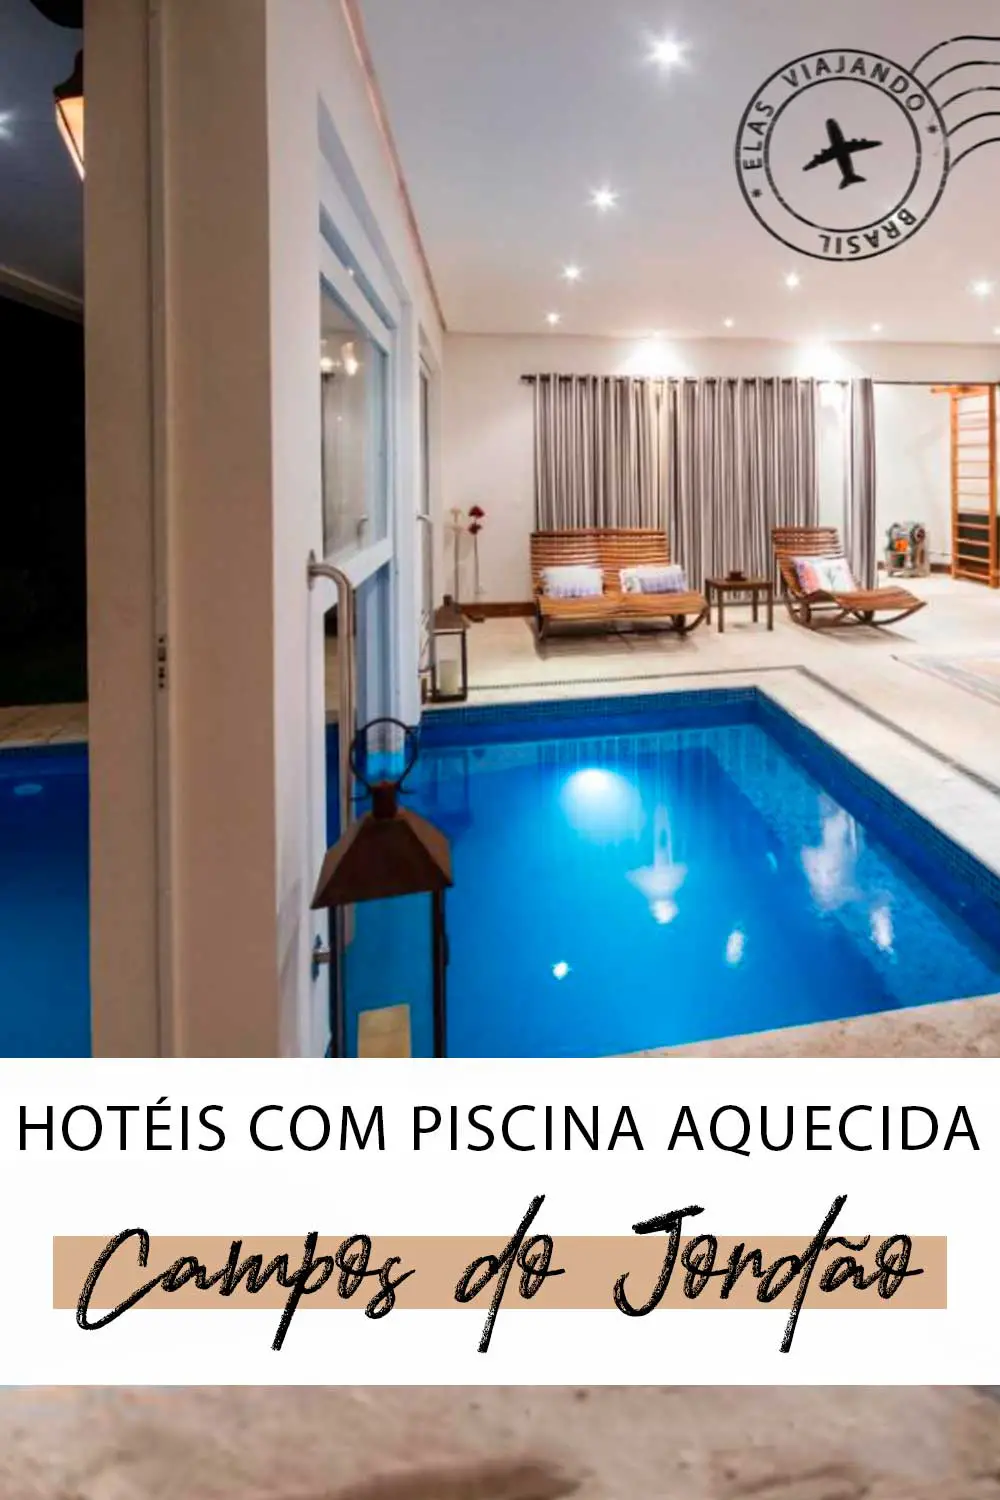 HOTEL COM PISCINA AQUECIDA EM CAMPOS DO JORDÃO